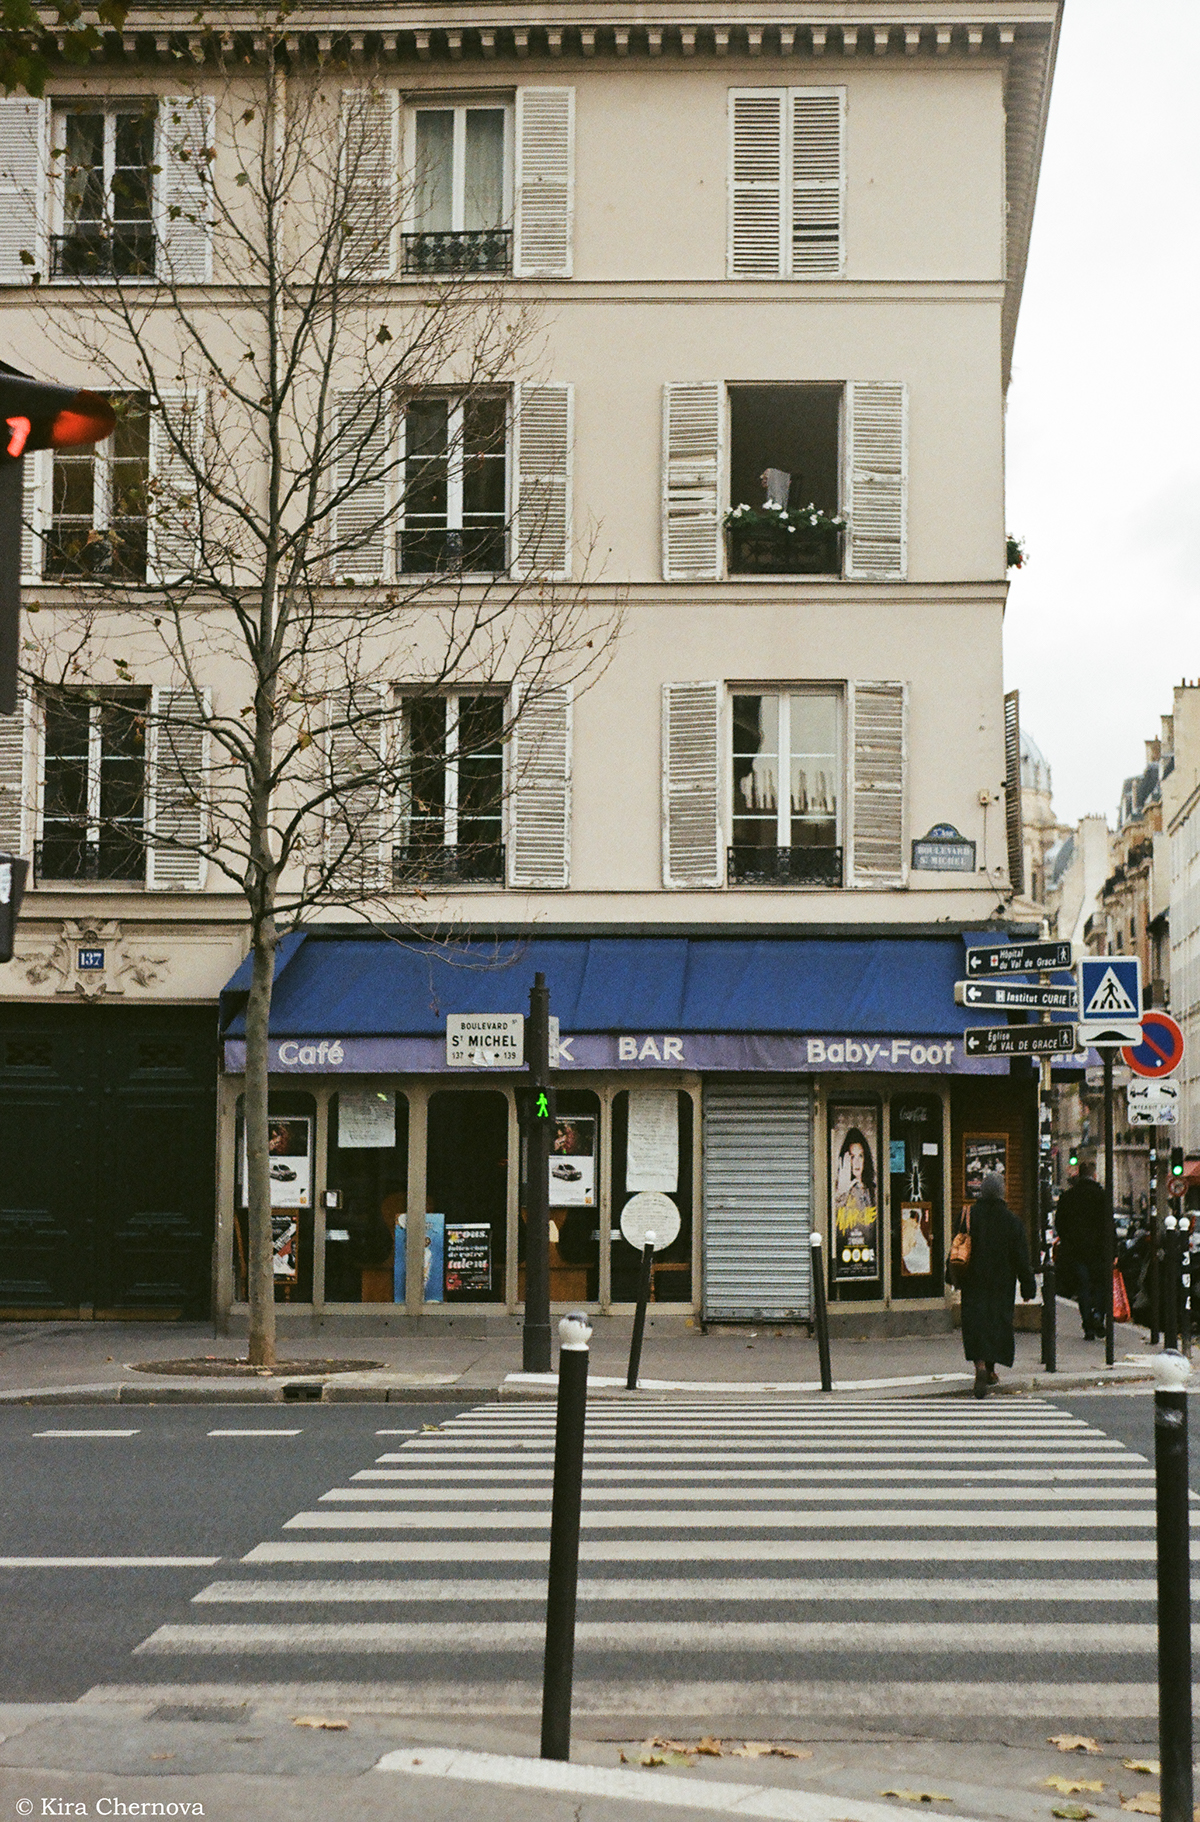 #FilmCamera #FilmPhotography #analoguephotography #paris #windows #FrontDoors